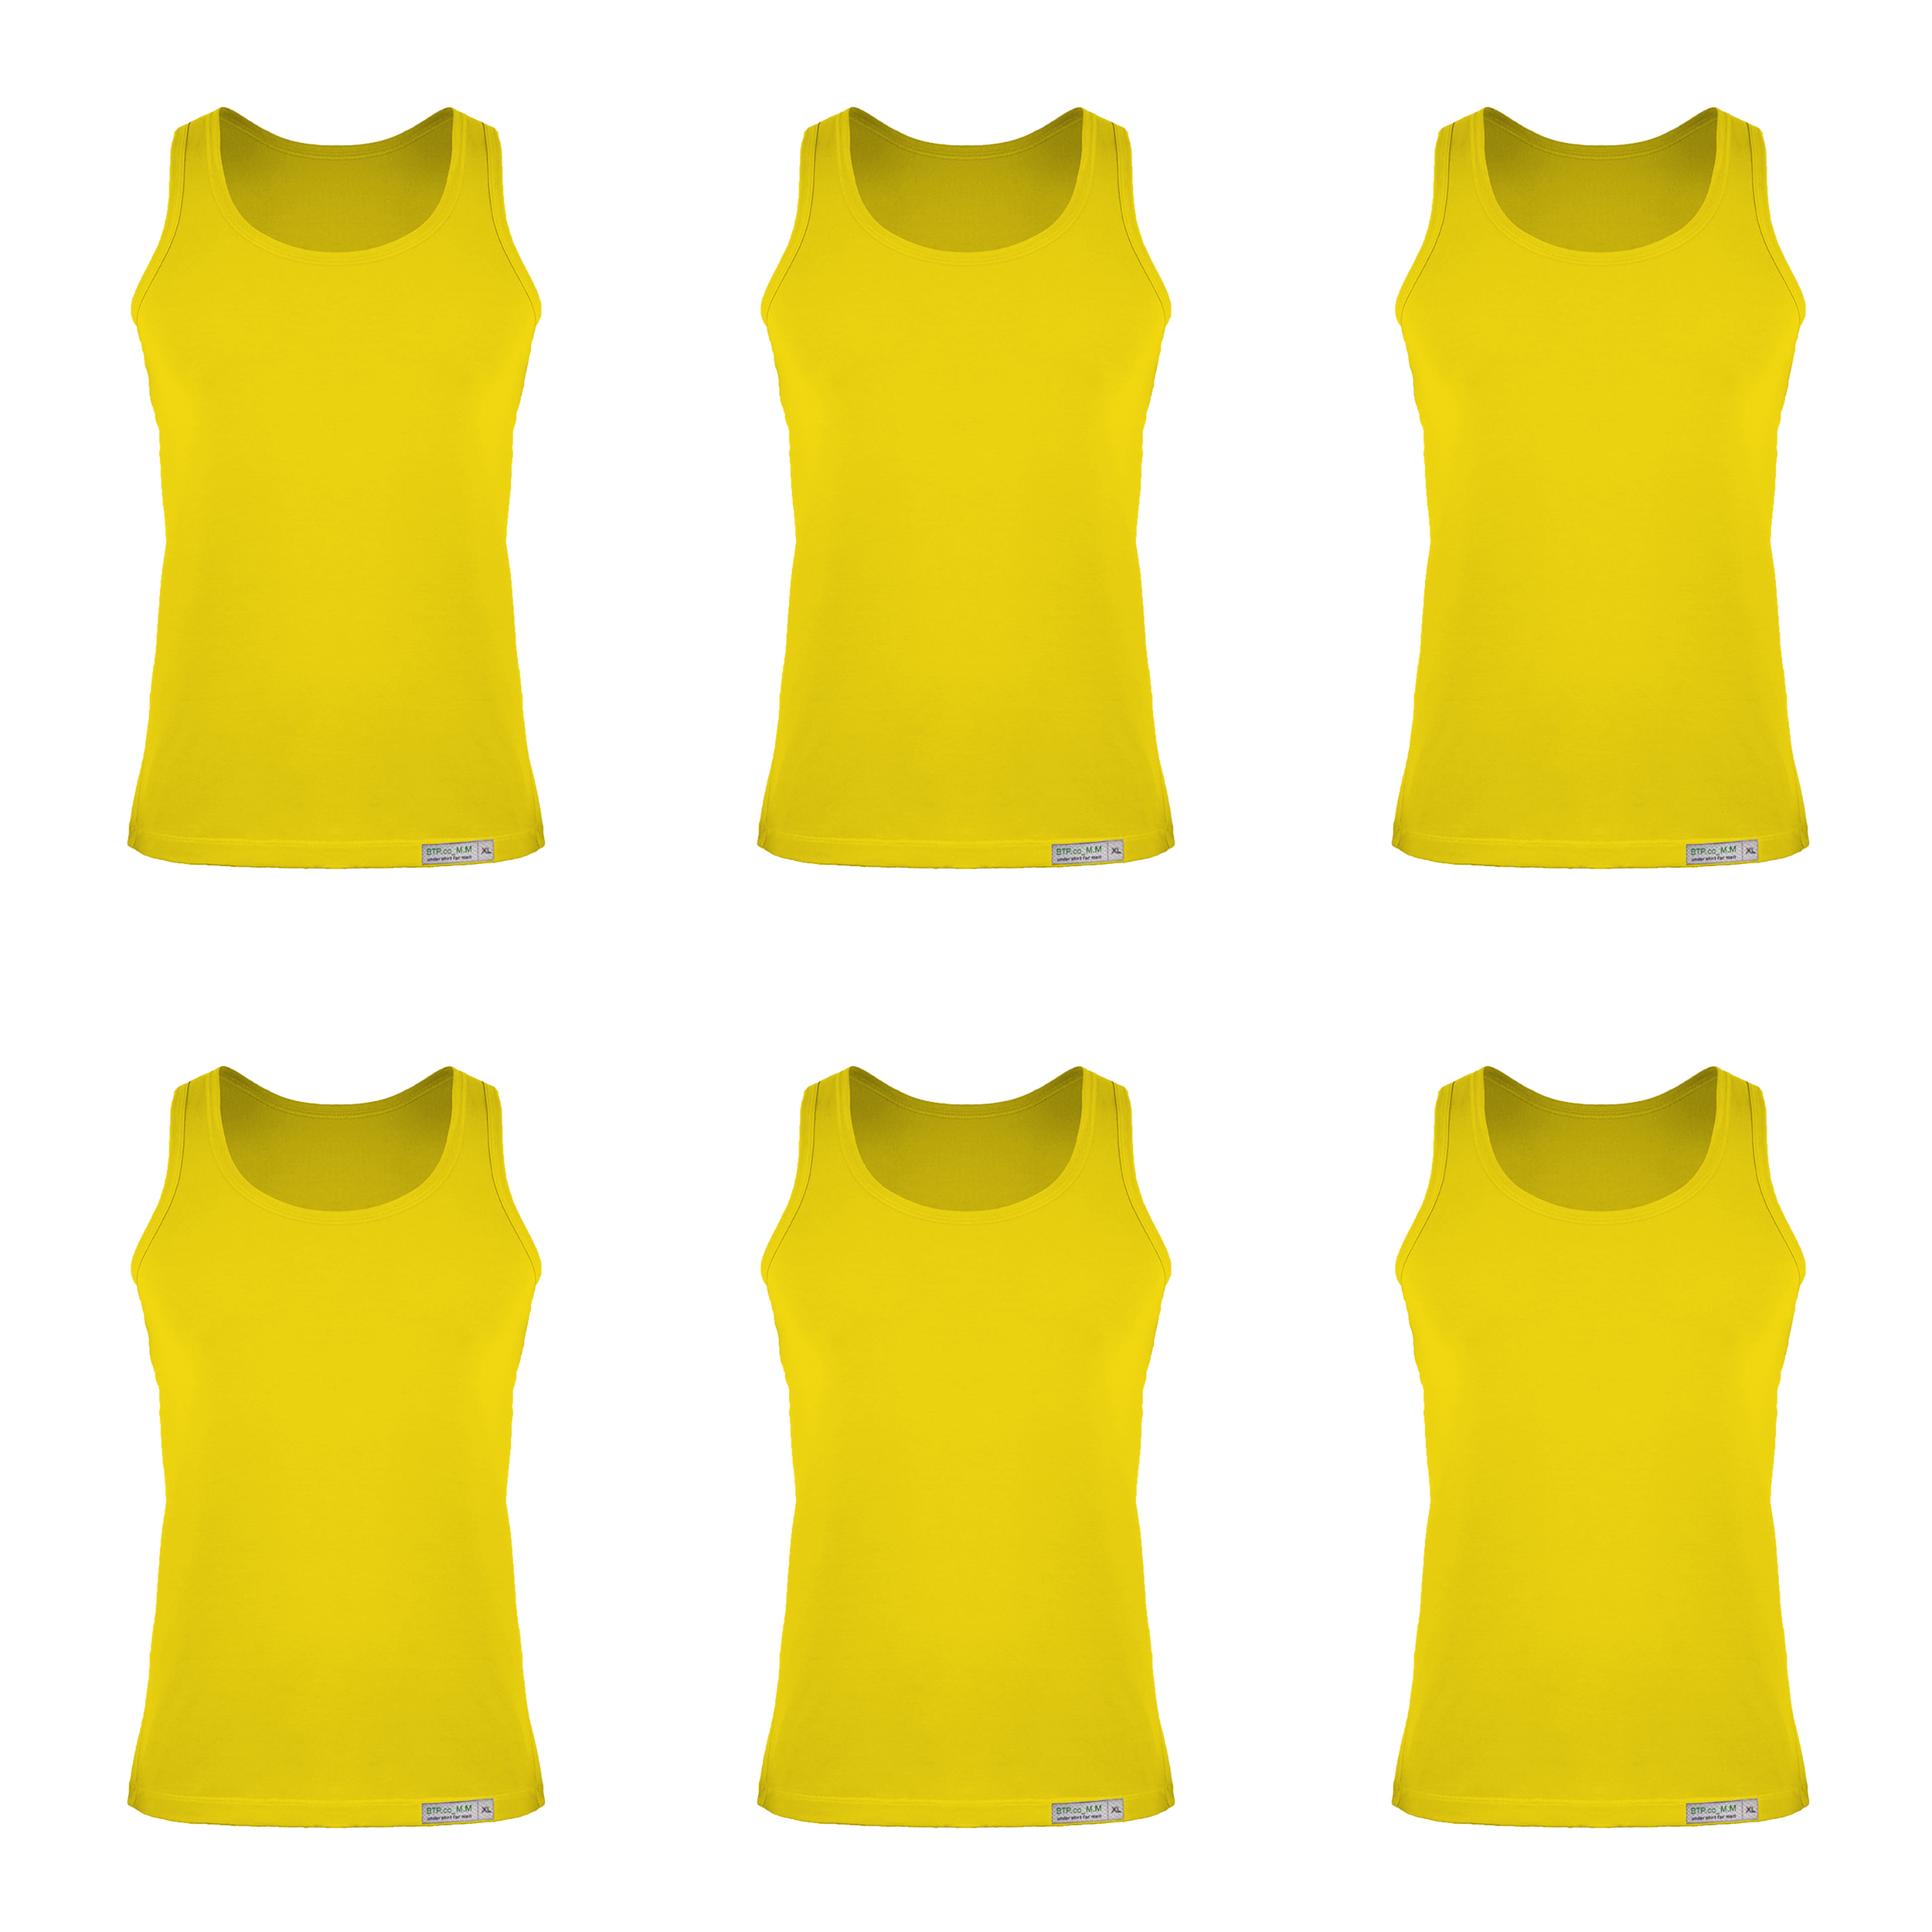 زیرپوش رکابی مردانه برهان تن پوش مدل 5-01 بسته 6 عددی رنگ زرد